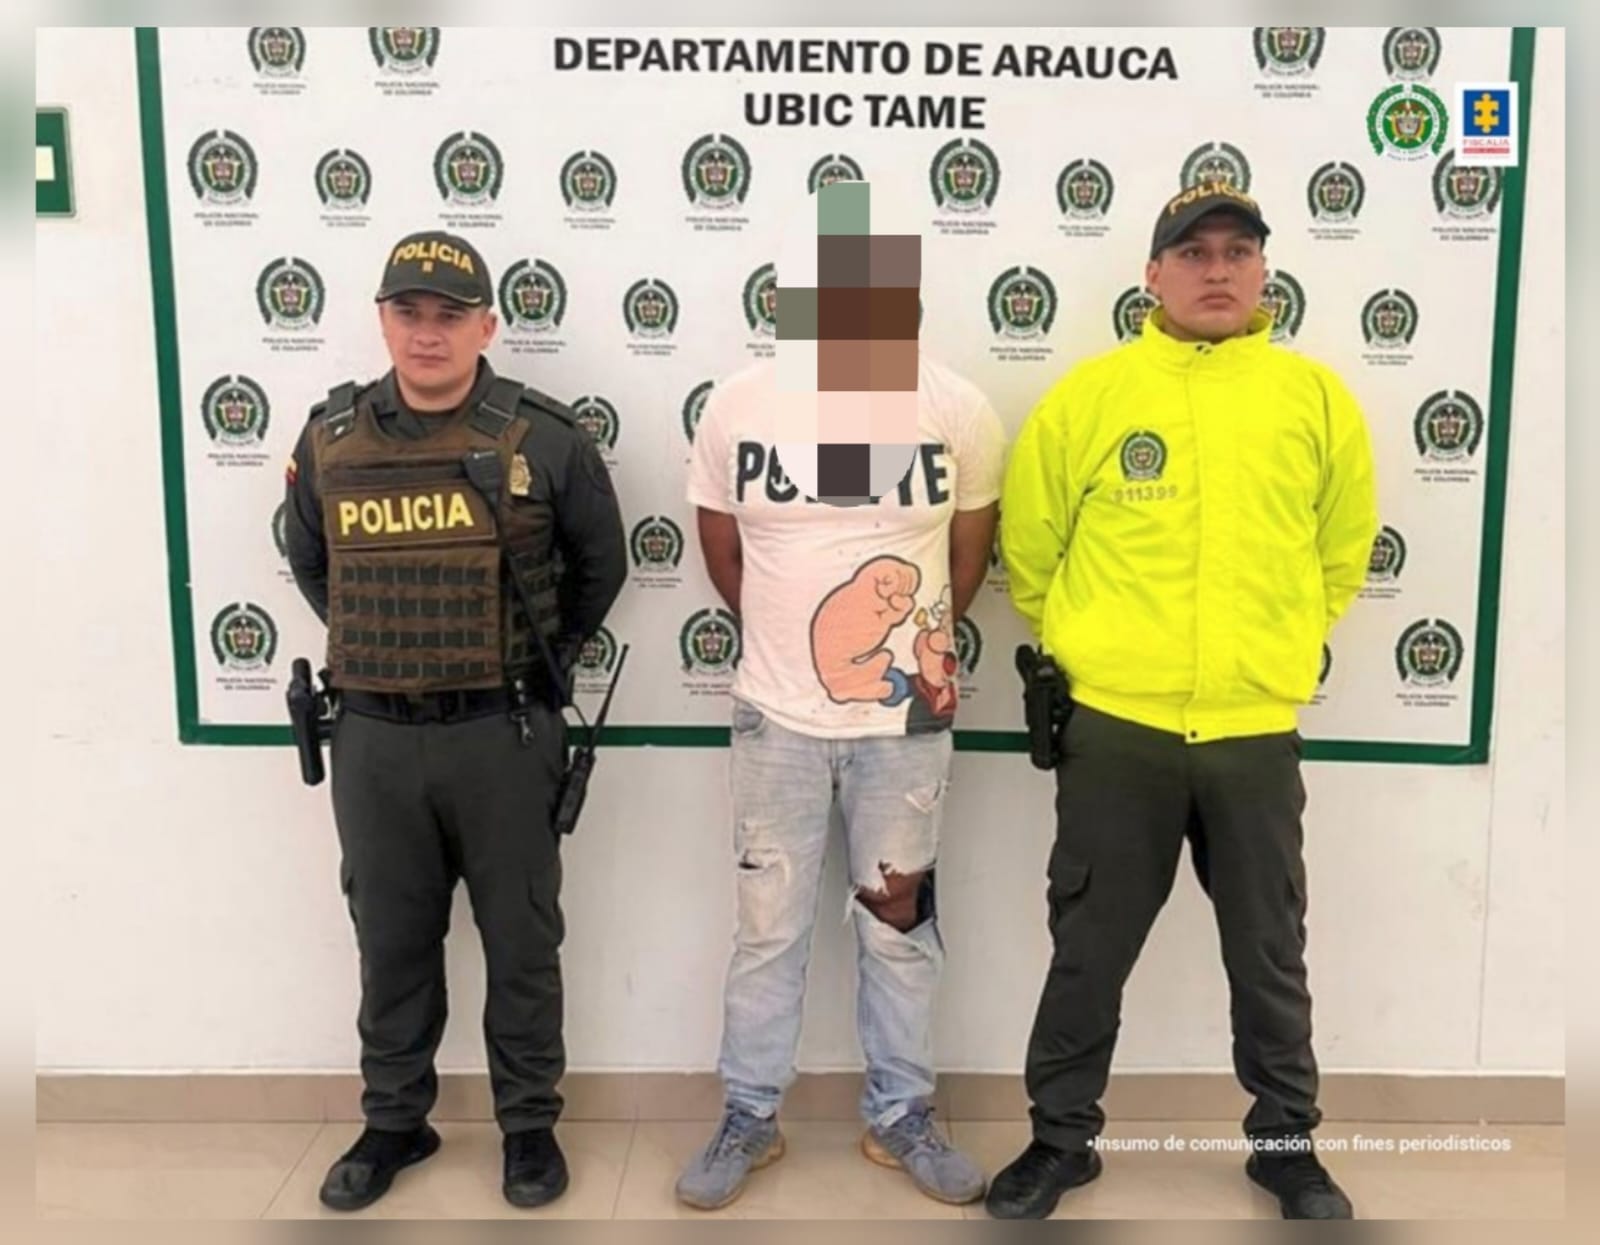 Judicializados dos hombres, presuntamente responsables de hurtos violentos en Arauca